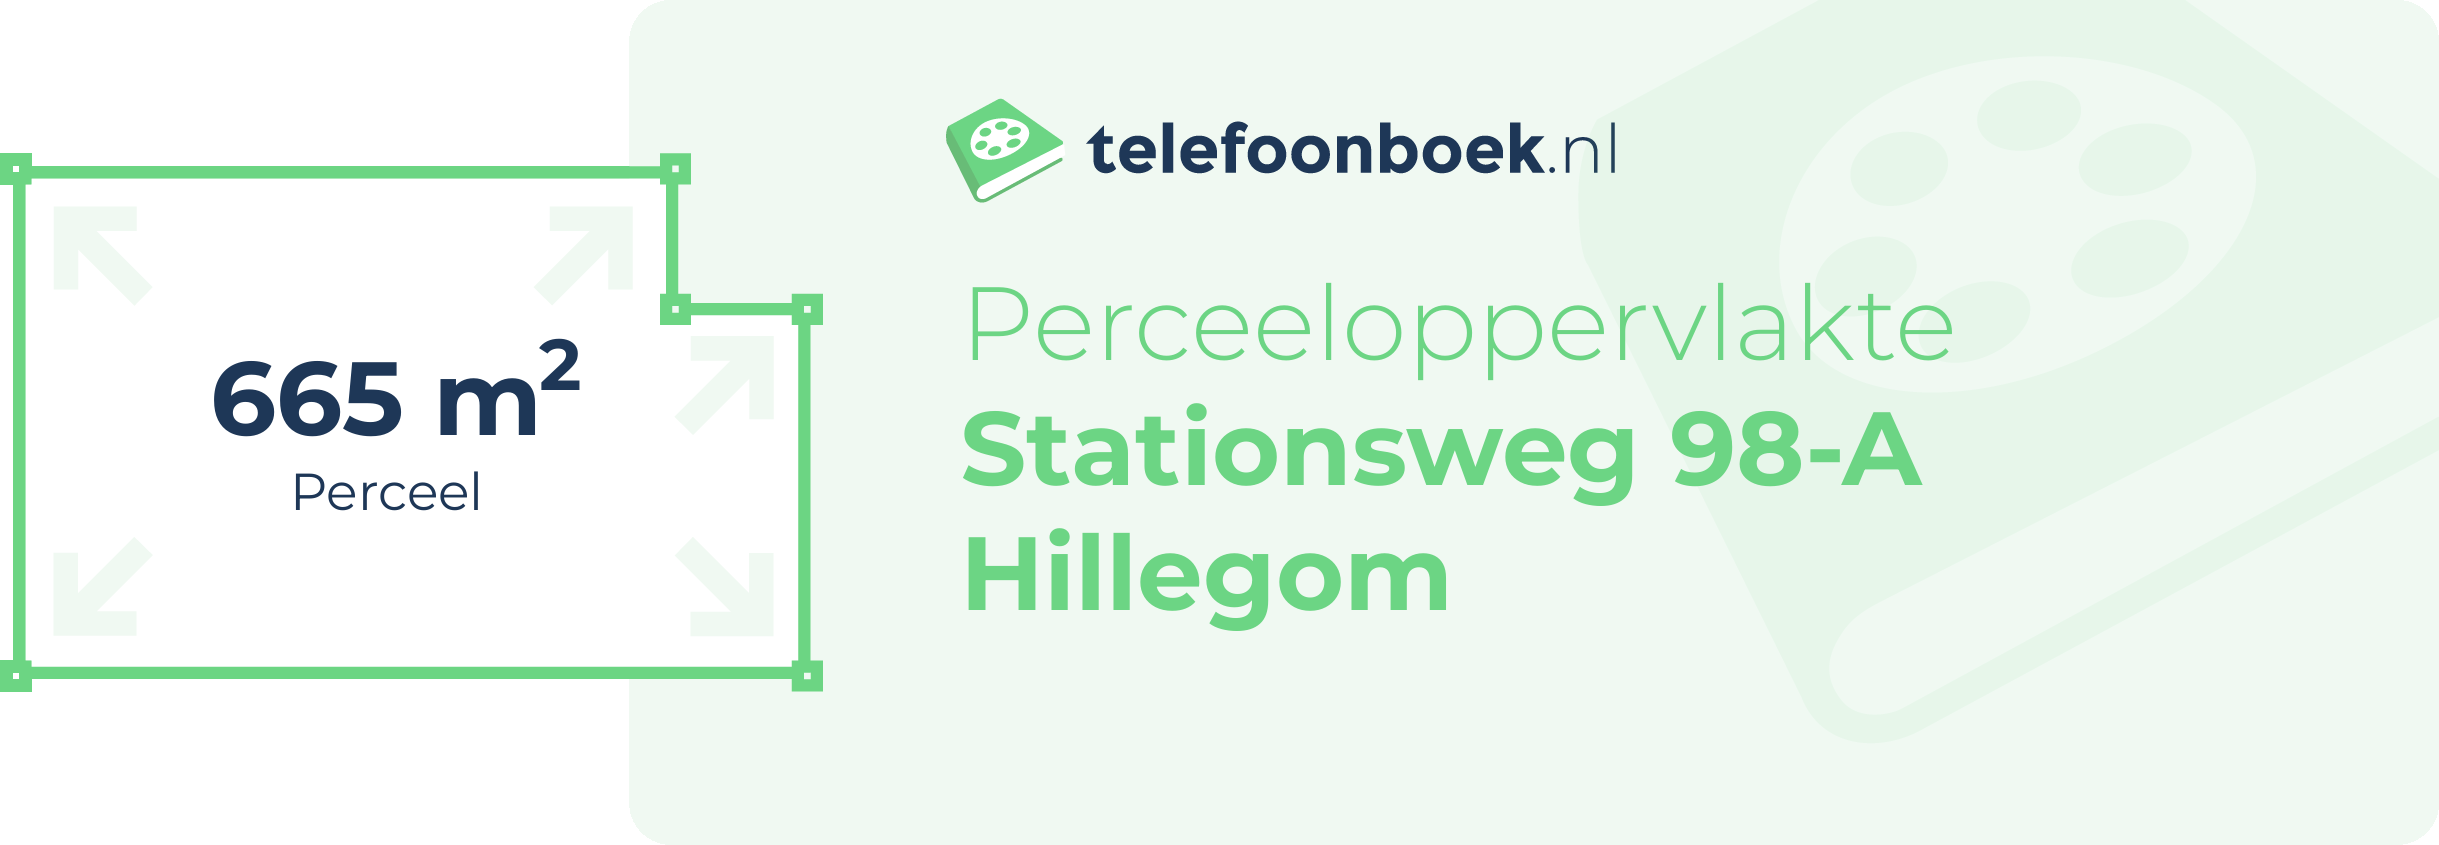 Perceeloppervlakte Stationsweg 98-A Hillegom